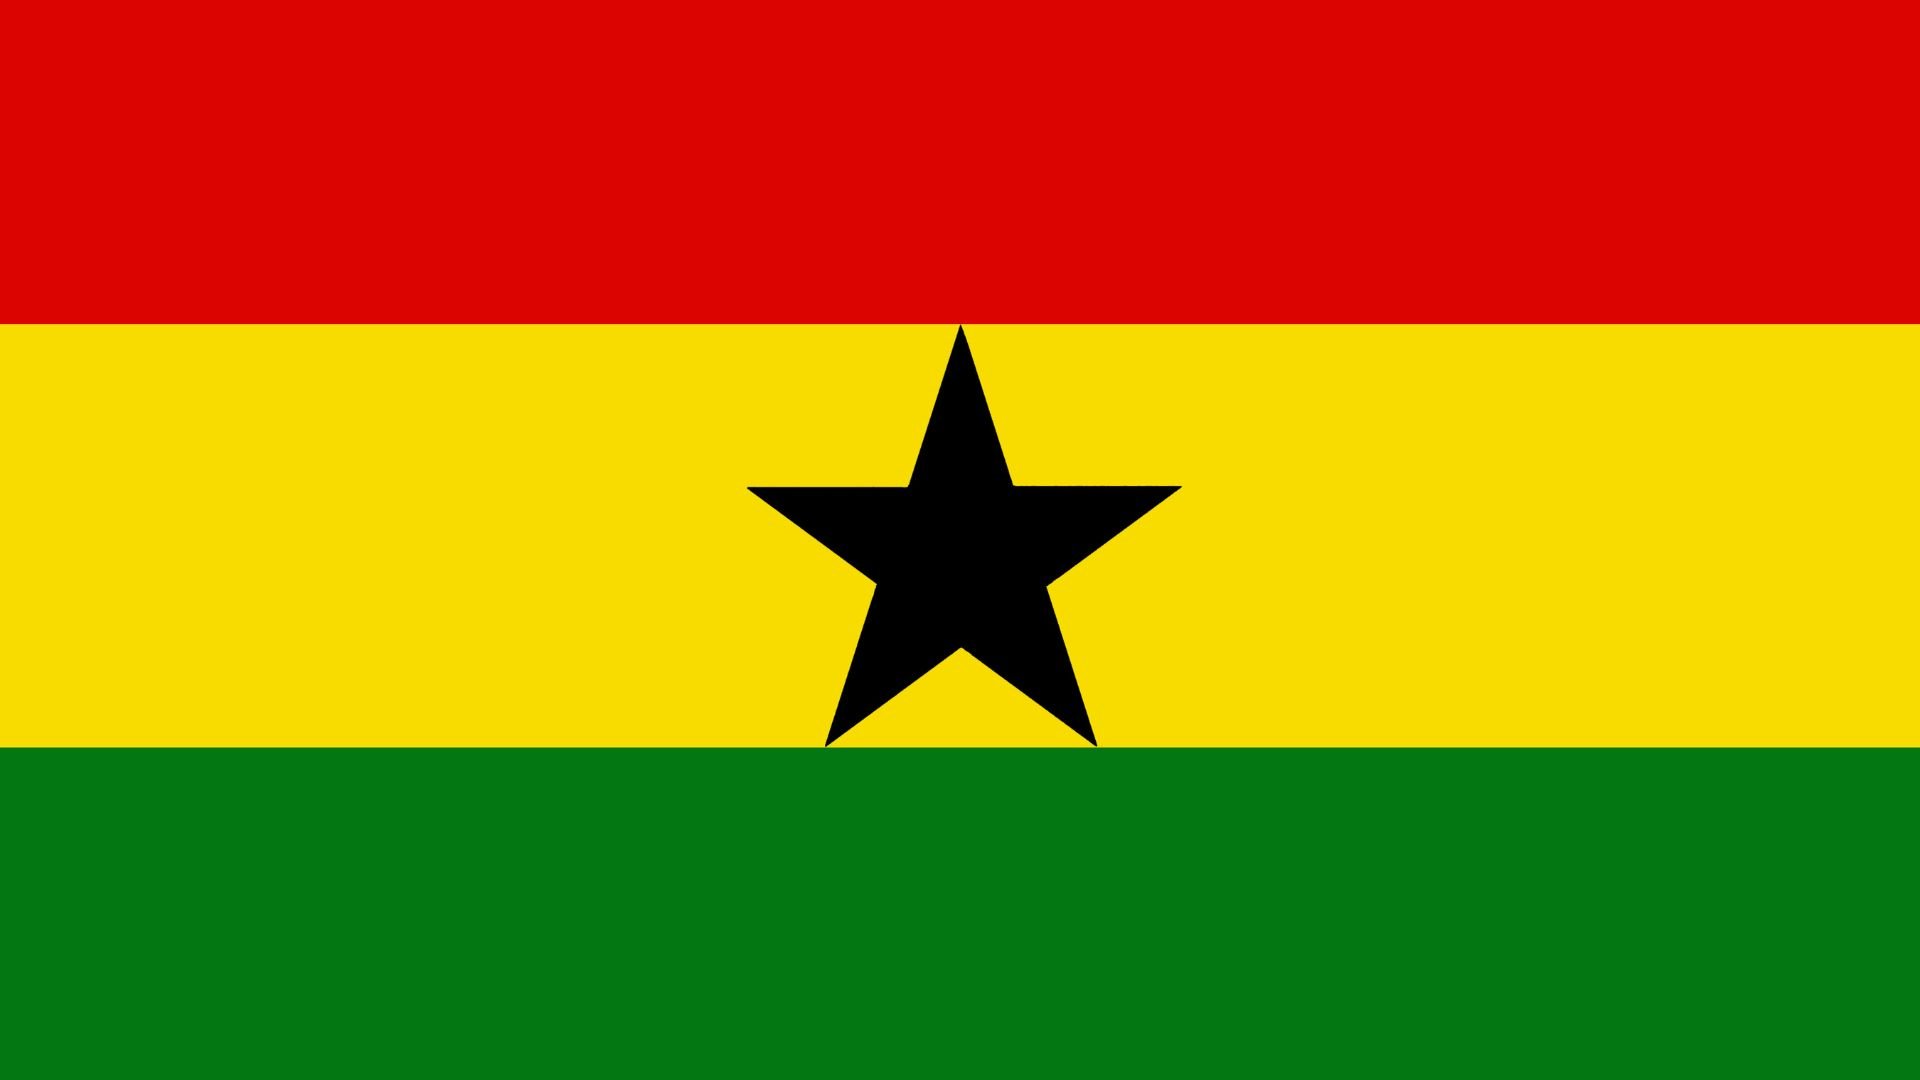 A bandeira é constituída por três listras horizontais vermelha, amarela e verde, e no centro da bandeira uma estrela negra.